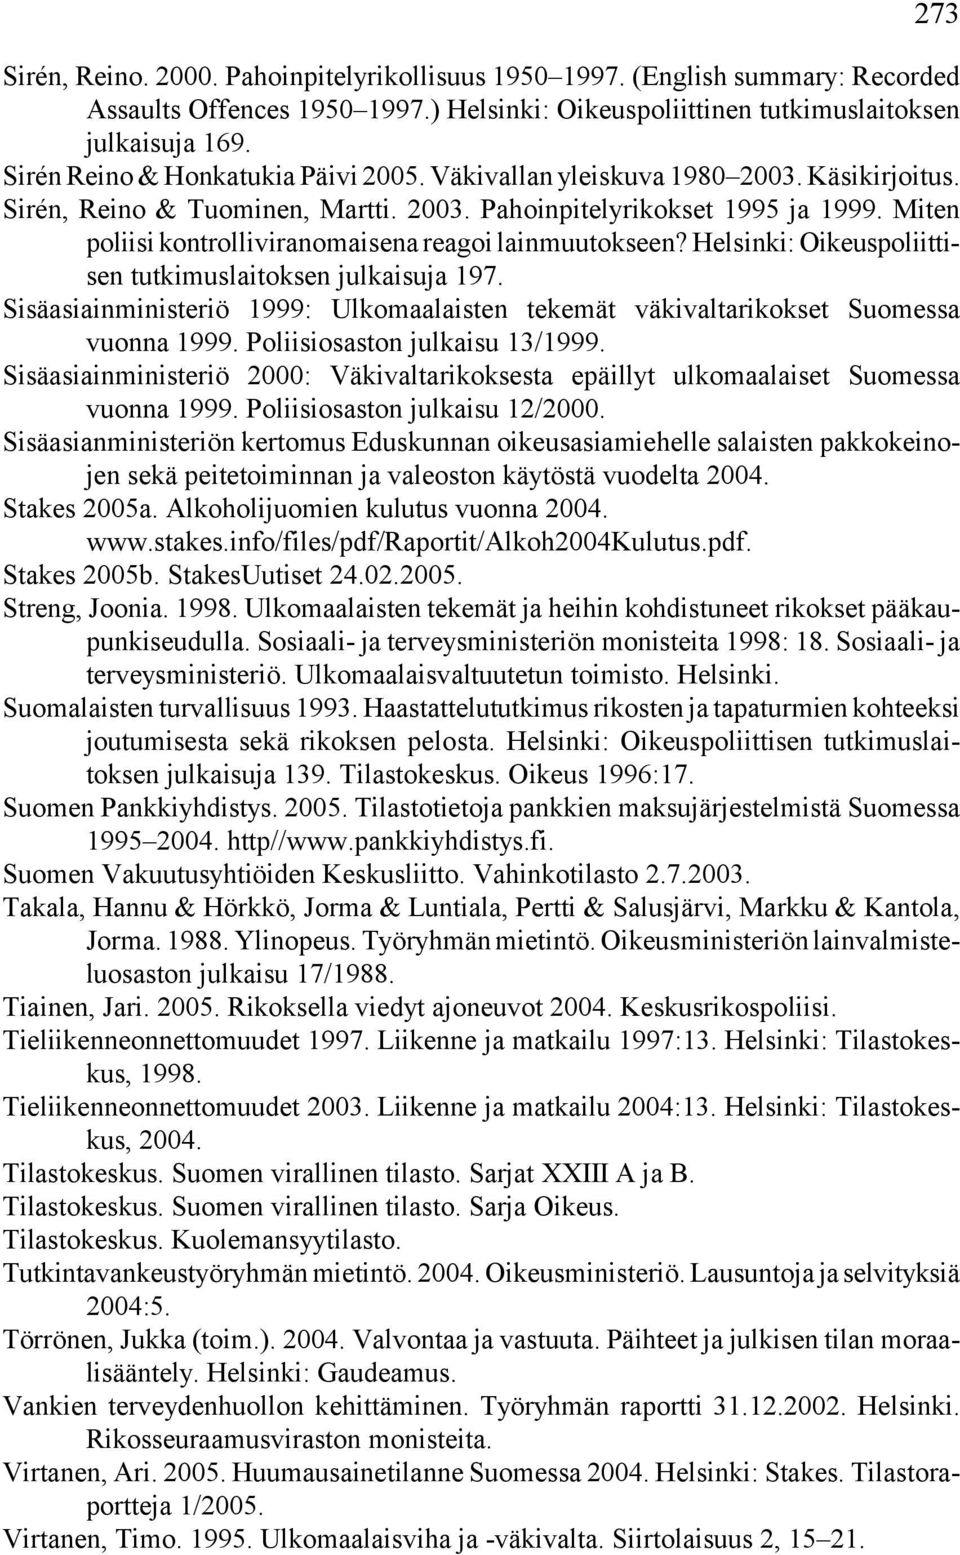 Miten poliisi kontrolliviranomaisena reagoi lainmuutokseen? Helsinki: Oikeuspoliittisen tutkimuslaitoksen julkaisuja 197.